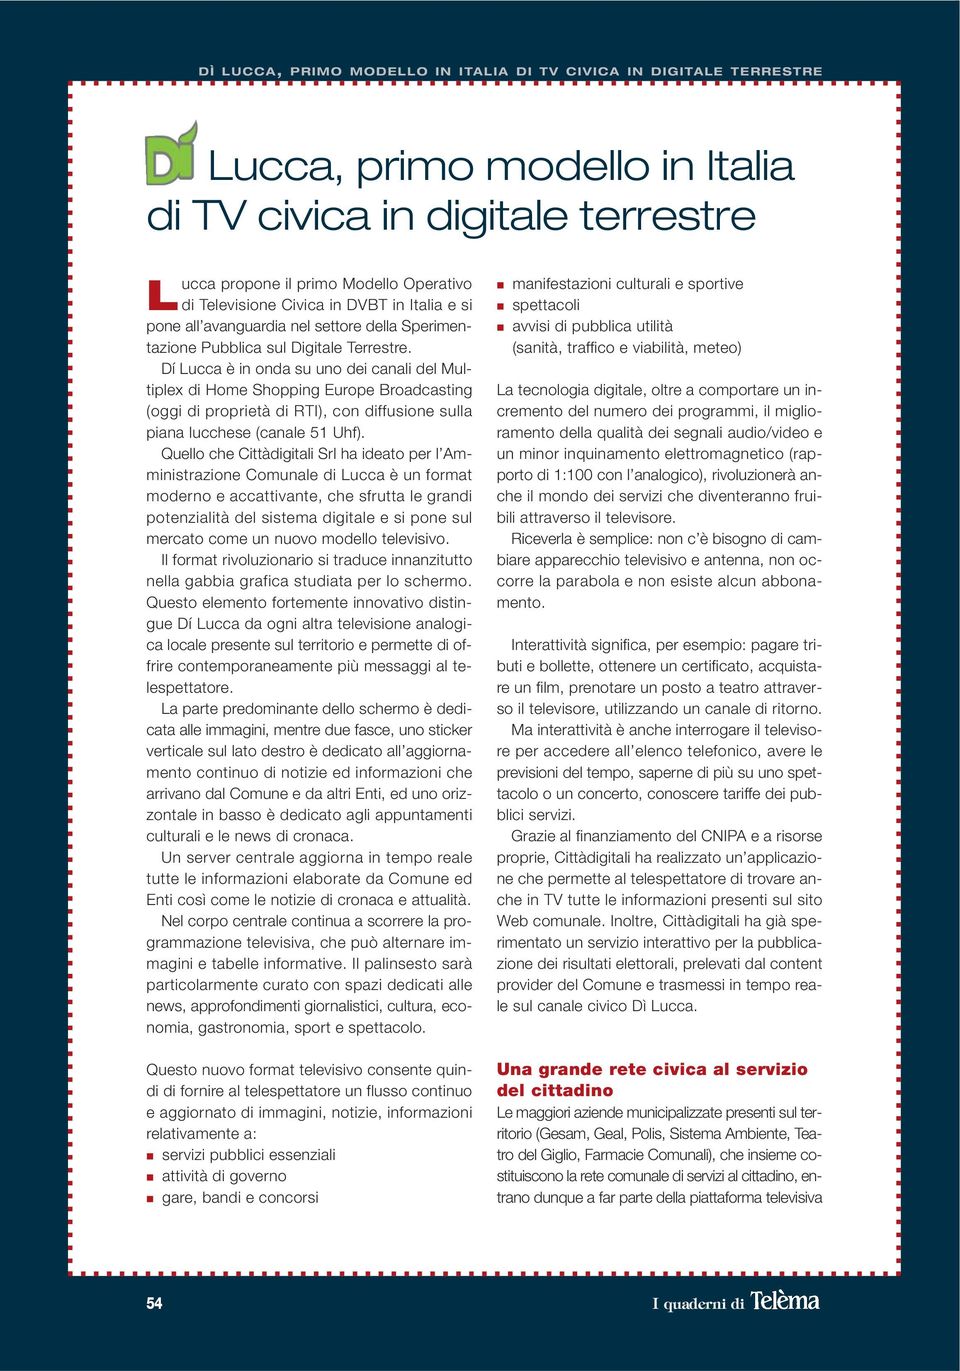 Dí Lucca è in onda su uno dei canali del Multiplex di Home Shopping Europe Broadcasting (oggi di proprietà di RTI), con diffusione sulla piana lucchese (canale 51 Uhf).